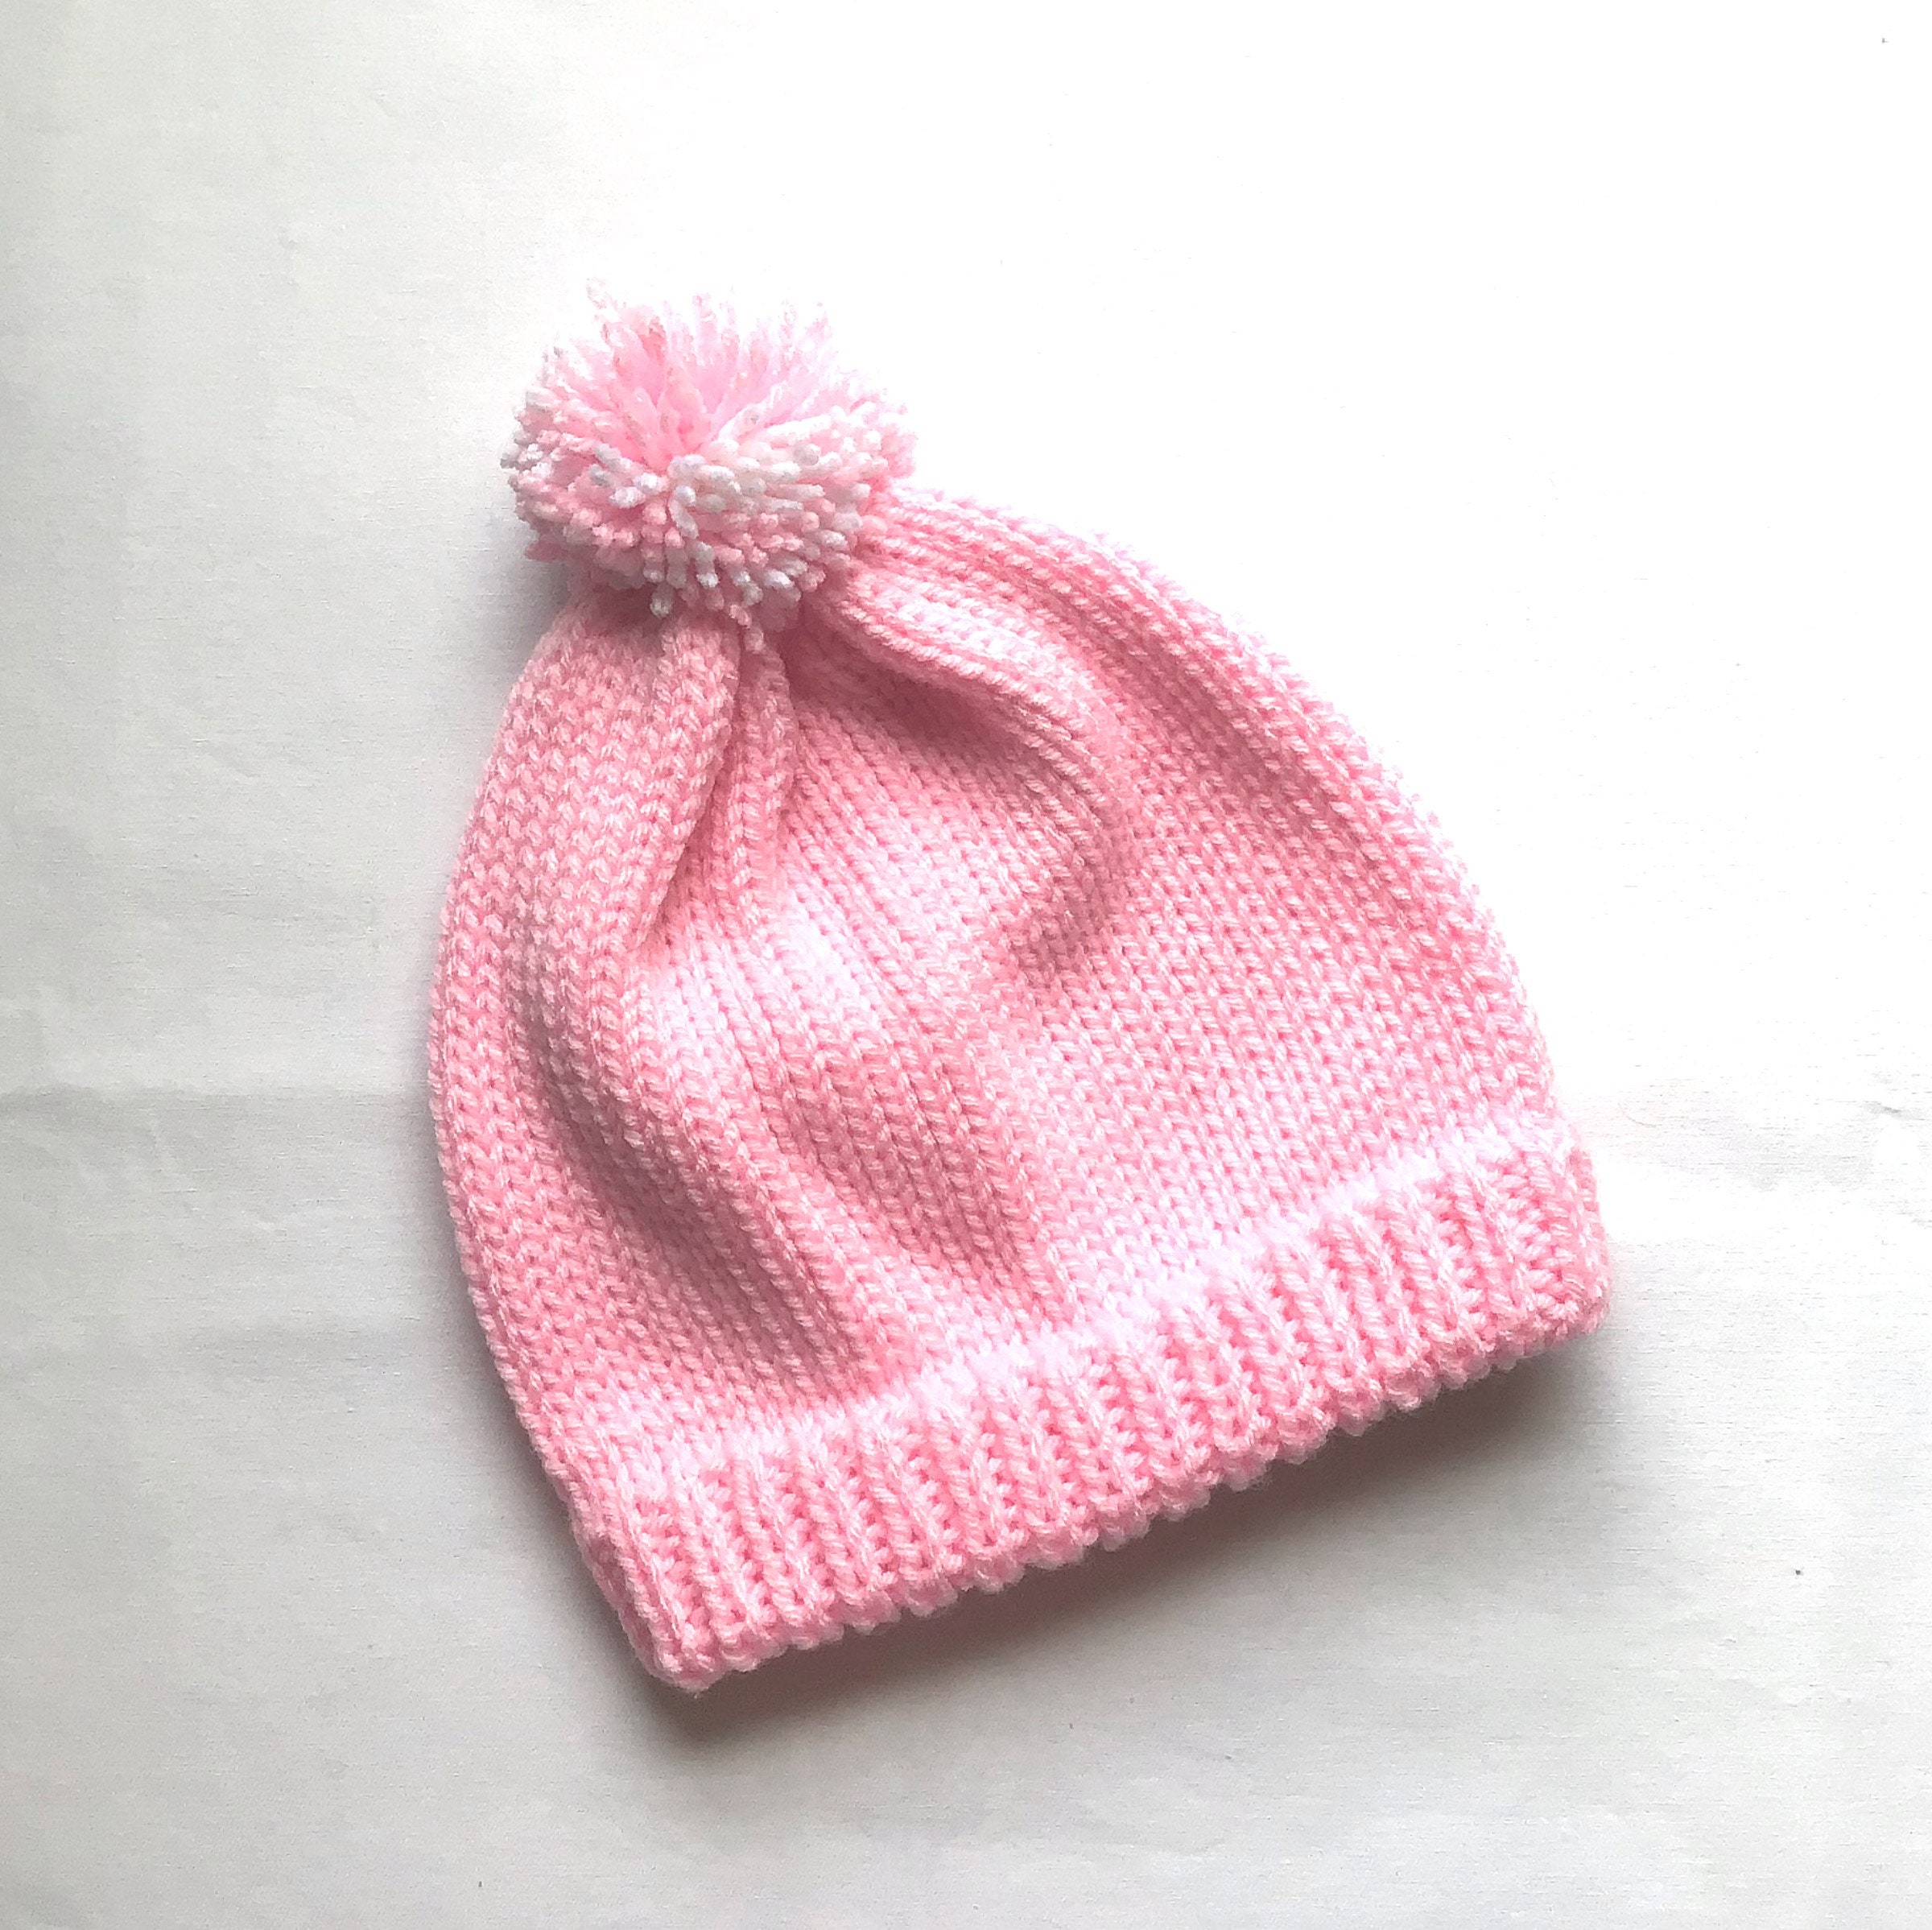 Perfil de niña en color rosa, sombrero con orejeras Fotografía de